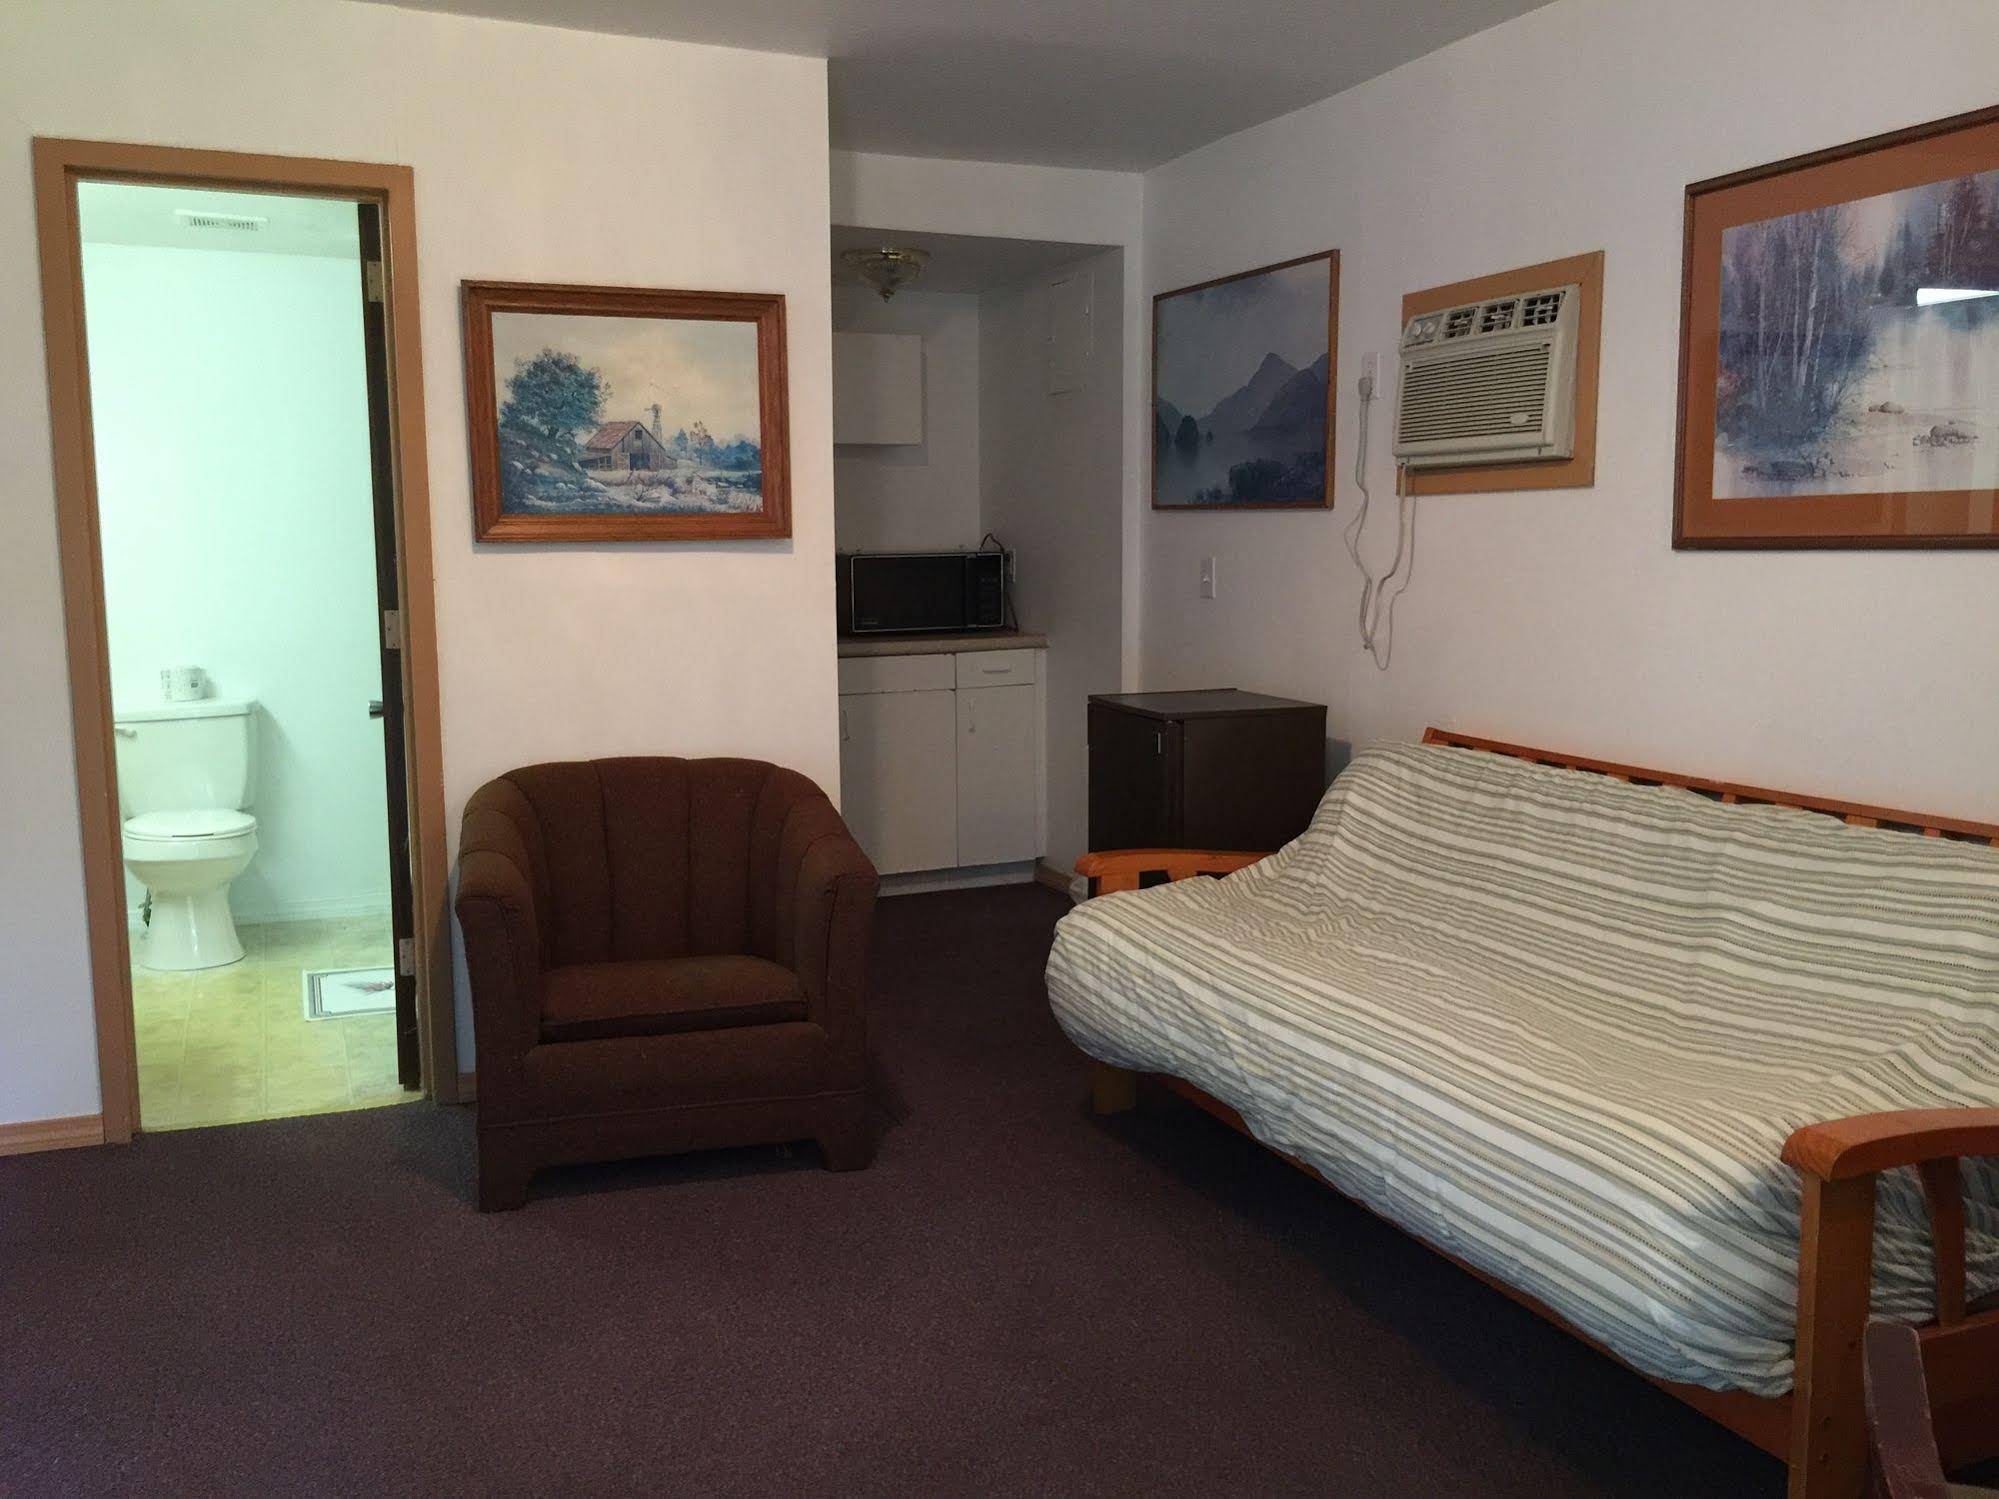 Adirondack Oasis Motel